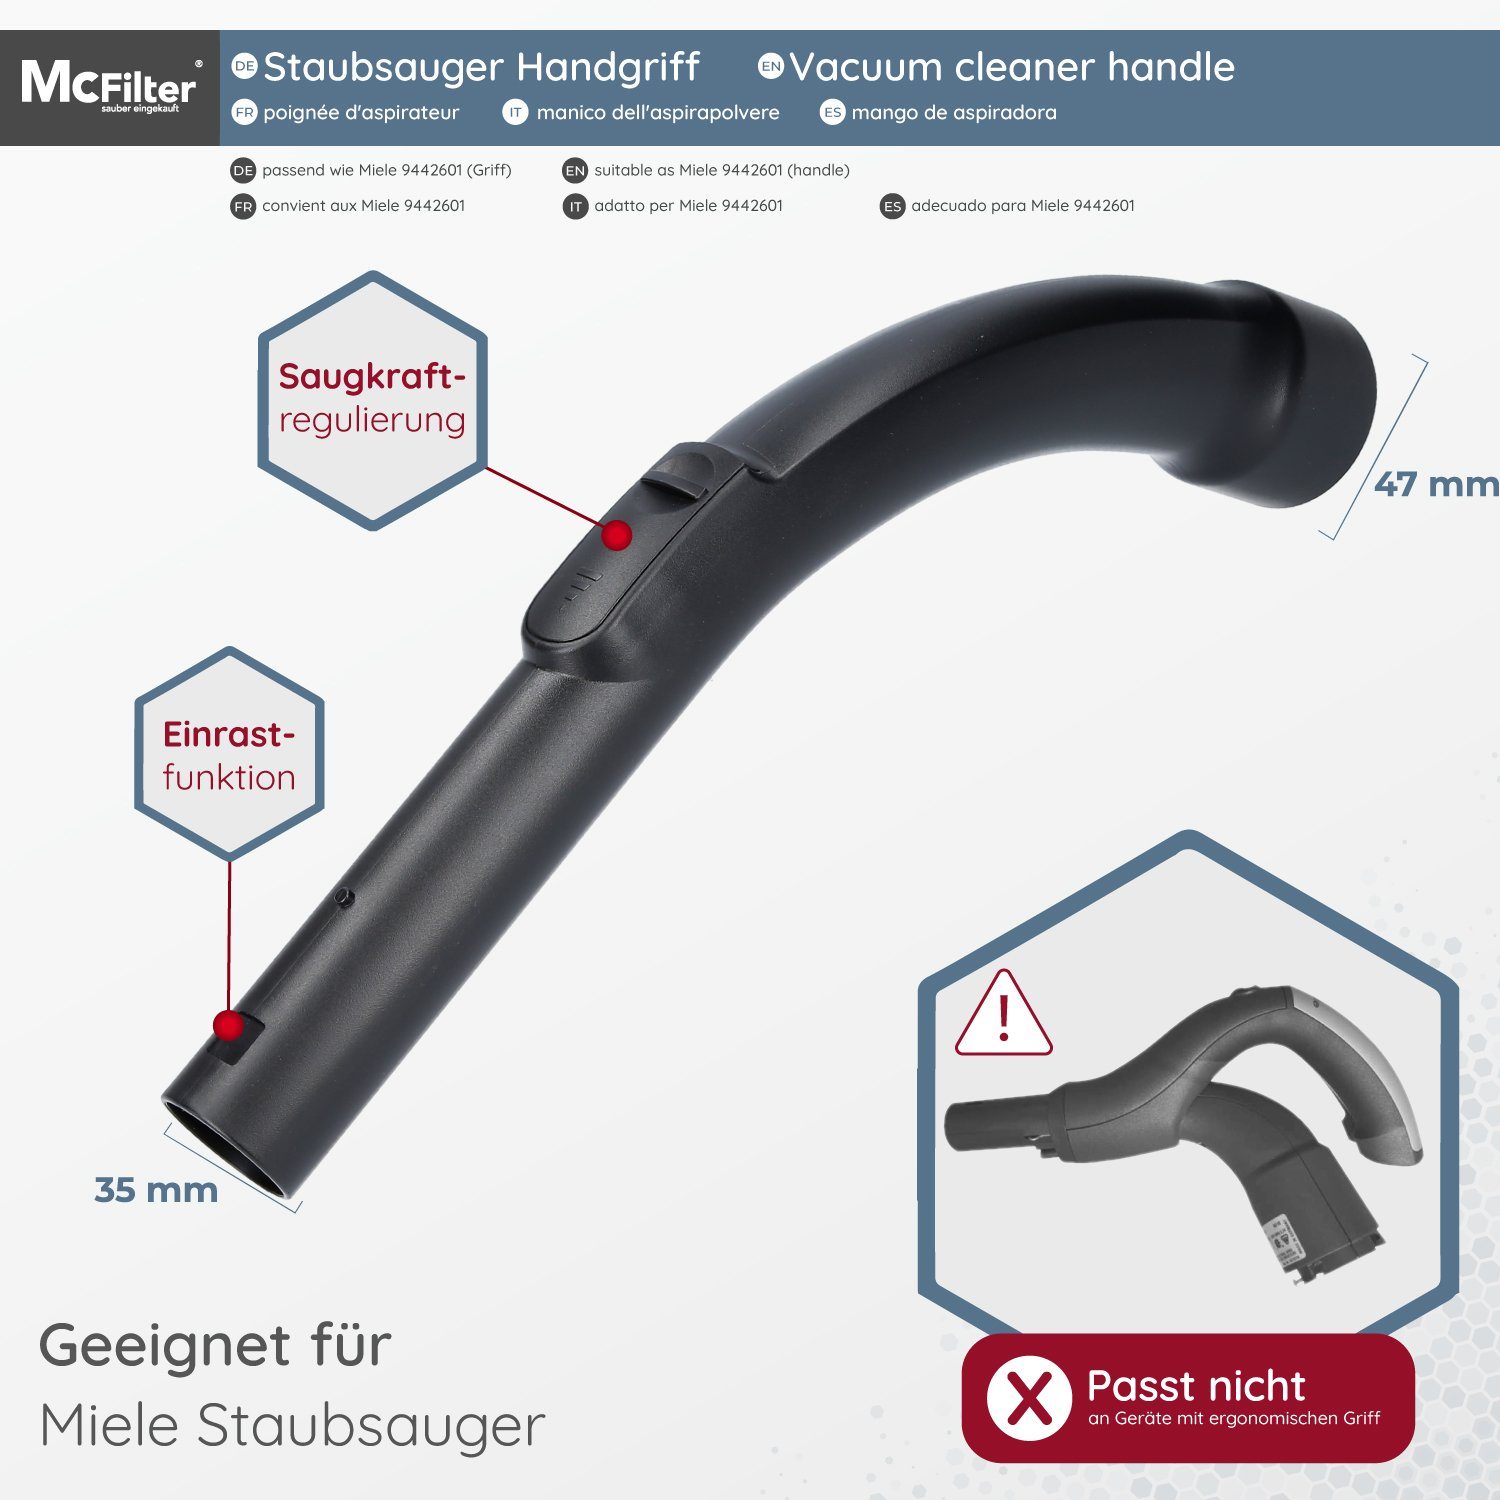 Handgriff, & Saugluftregulierung Tango ergonomisch mit McFilter passend Ø Staubsaugerrohr S771 Plus, Miele für 35mm, Einrast-Funktion geformt,